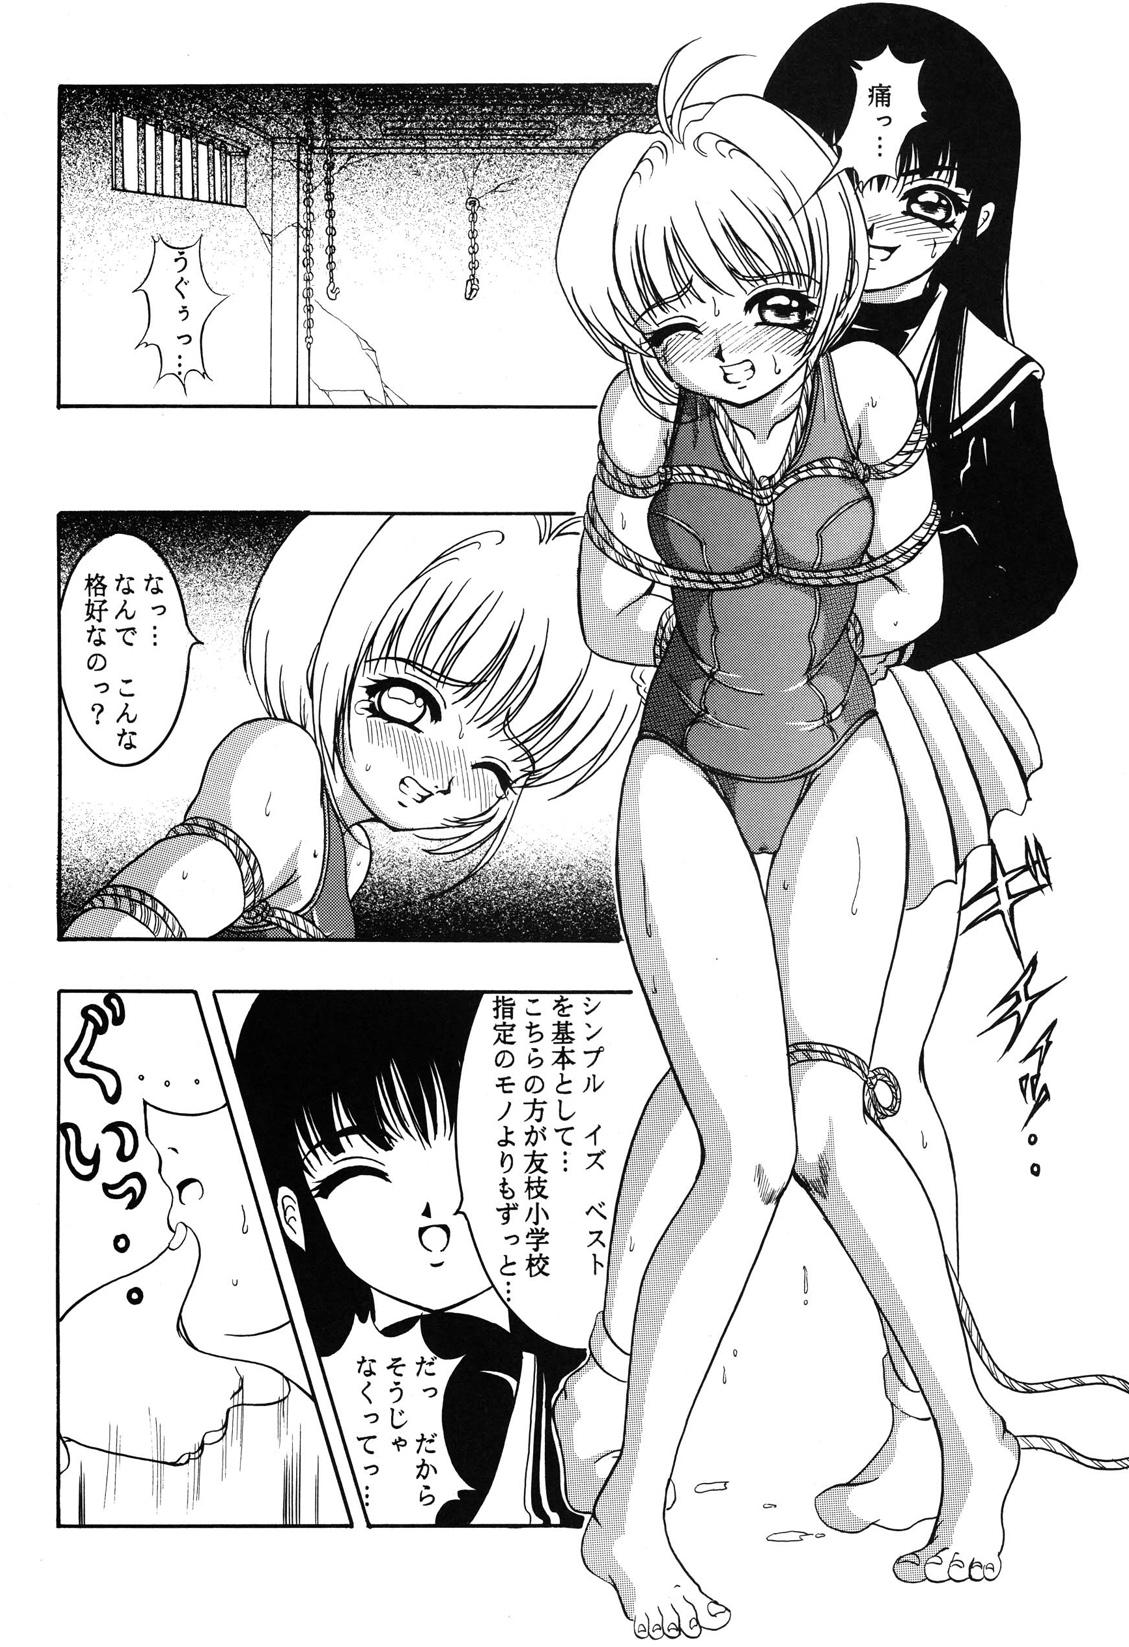 Blackcocks Hana ni Arashi no Rei hemo Aruzo - Cardcaptor sakura Bunda - Page 7